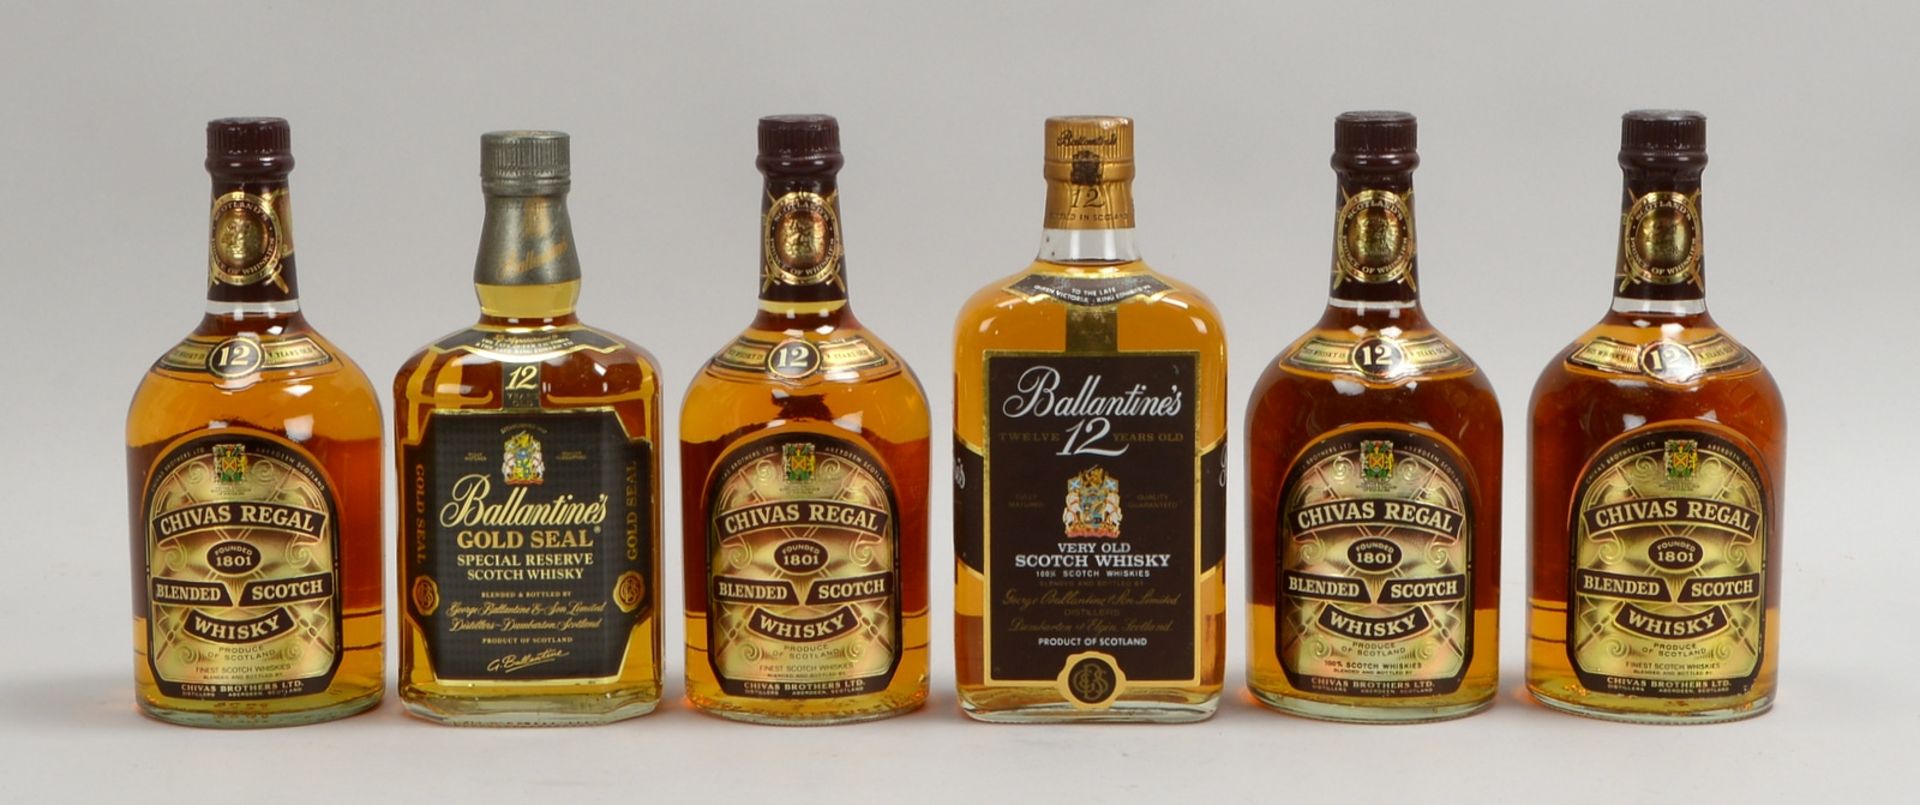 Sammler-Whiskys, 6 Fl.: 4x Scotch Chivas Regal, und 2x Ballantines Scotch